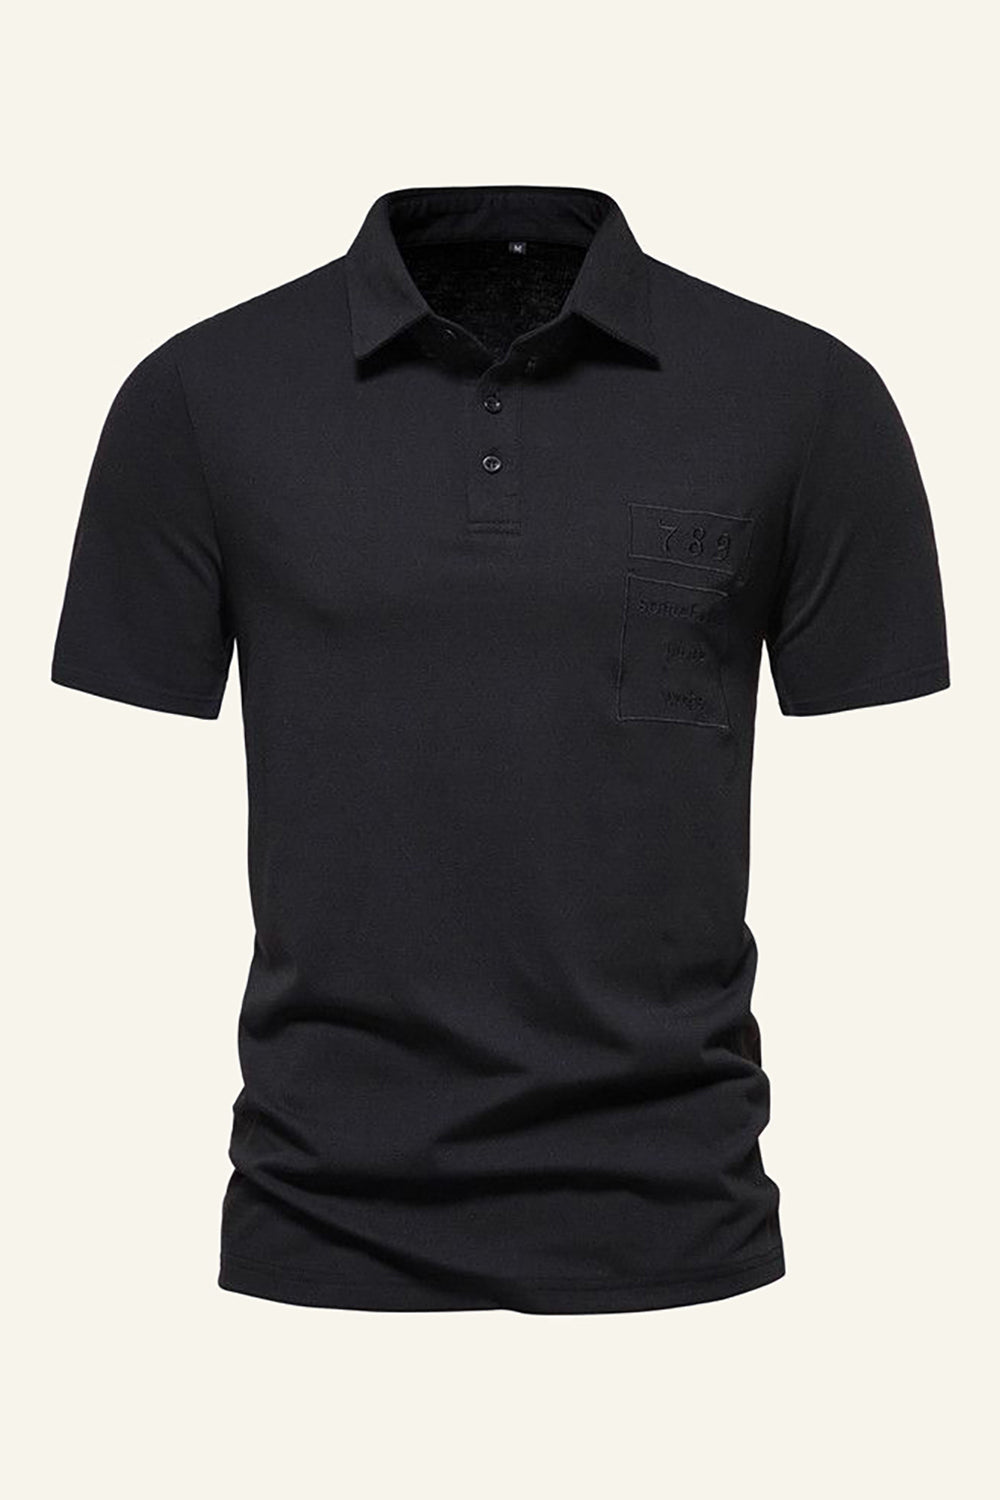 Black Cotton Short Sleeves Men Casual Polo Shirt